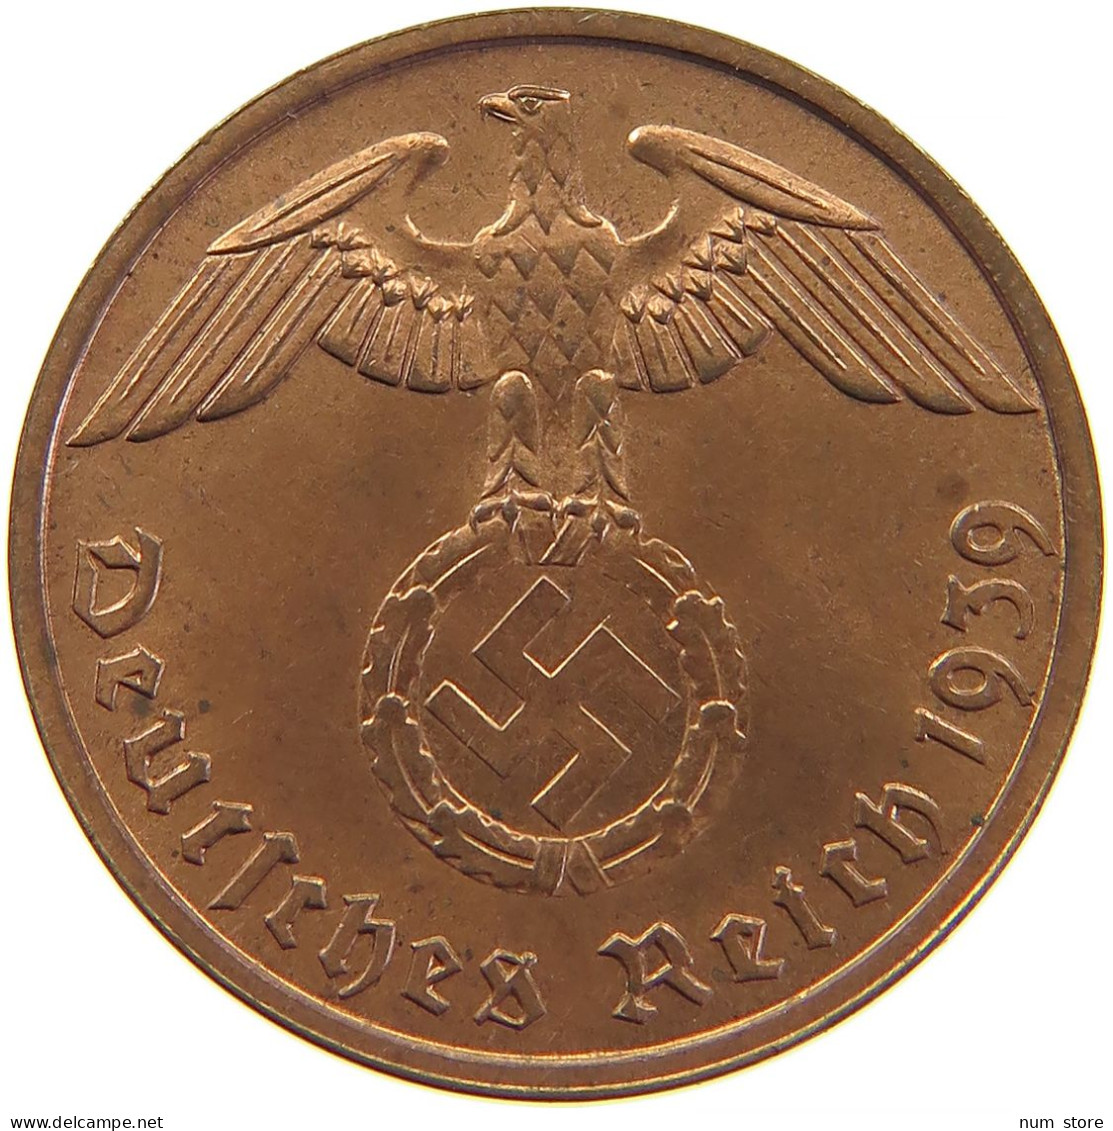 GERMANY 2 REICHSPFENNIG 1939 B #s083 0337 - 2 Reichspfennig